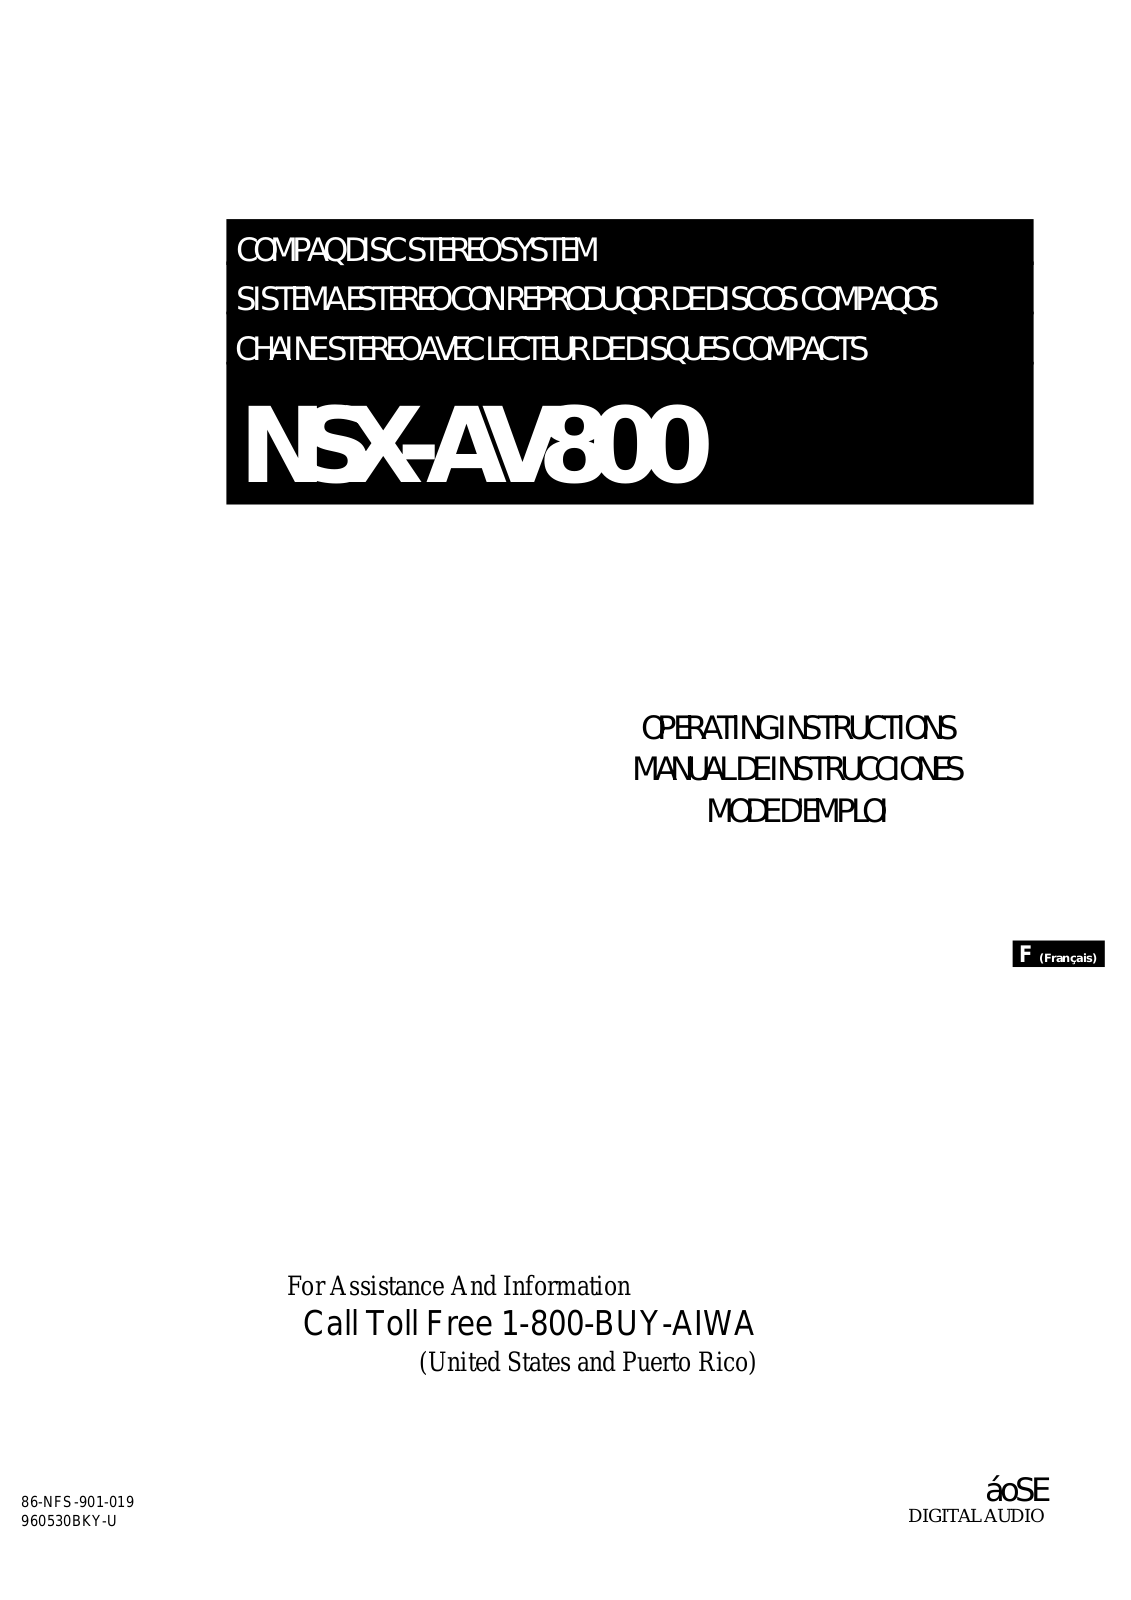 Aiwa NSX-AV800 User Manual